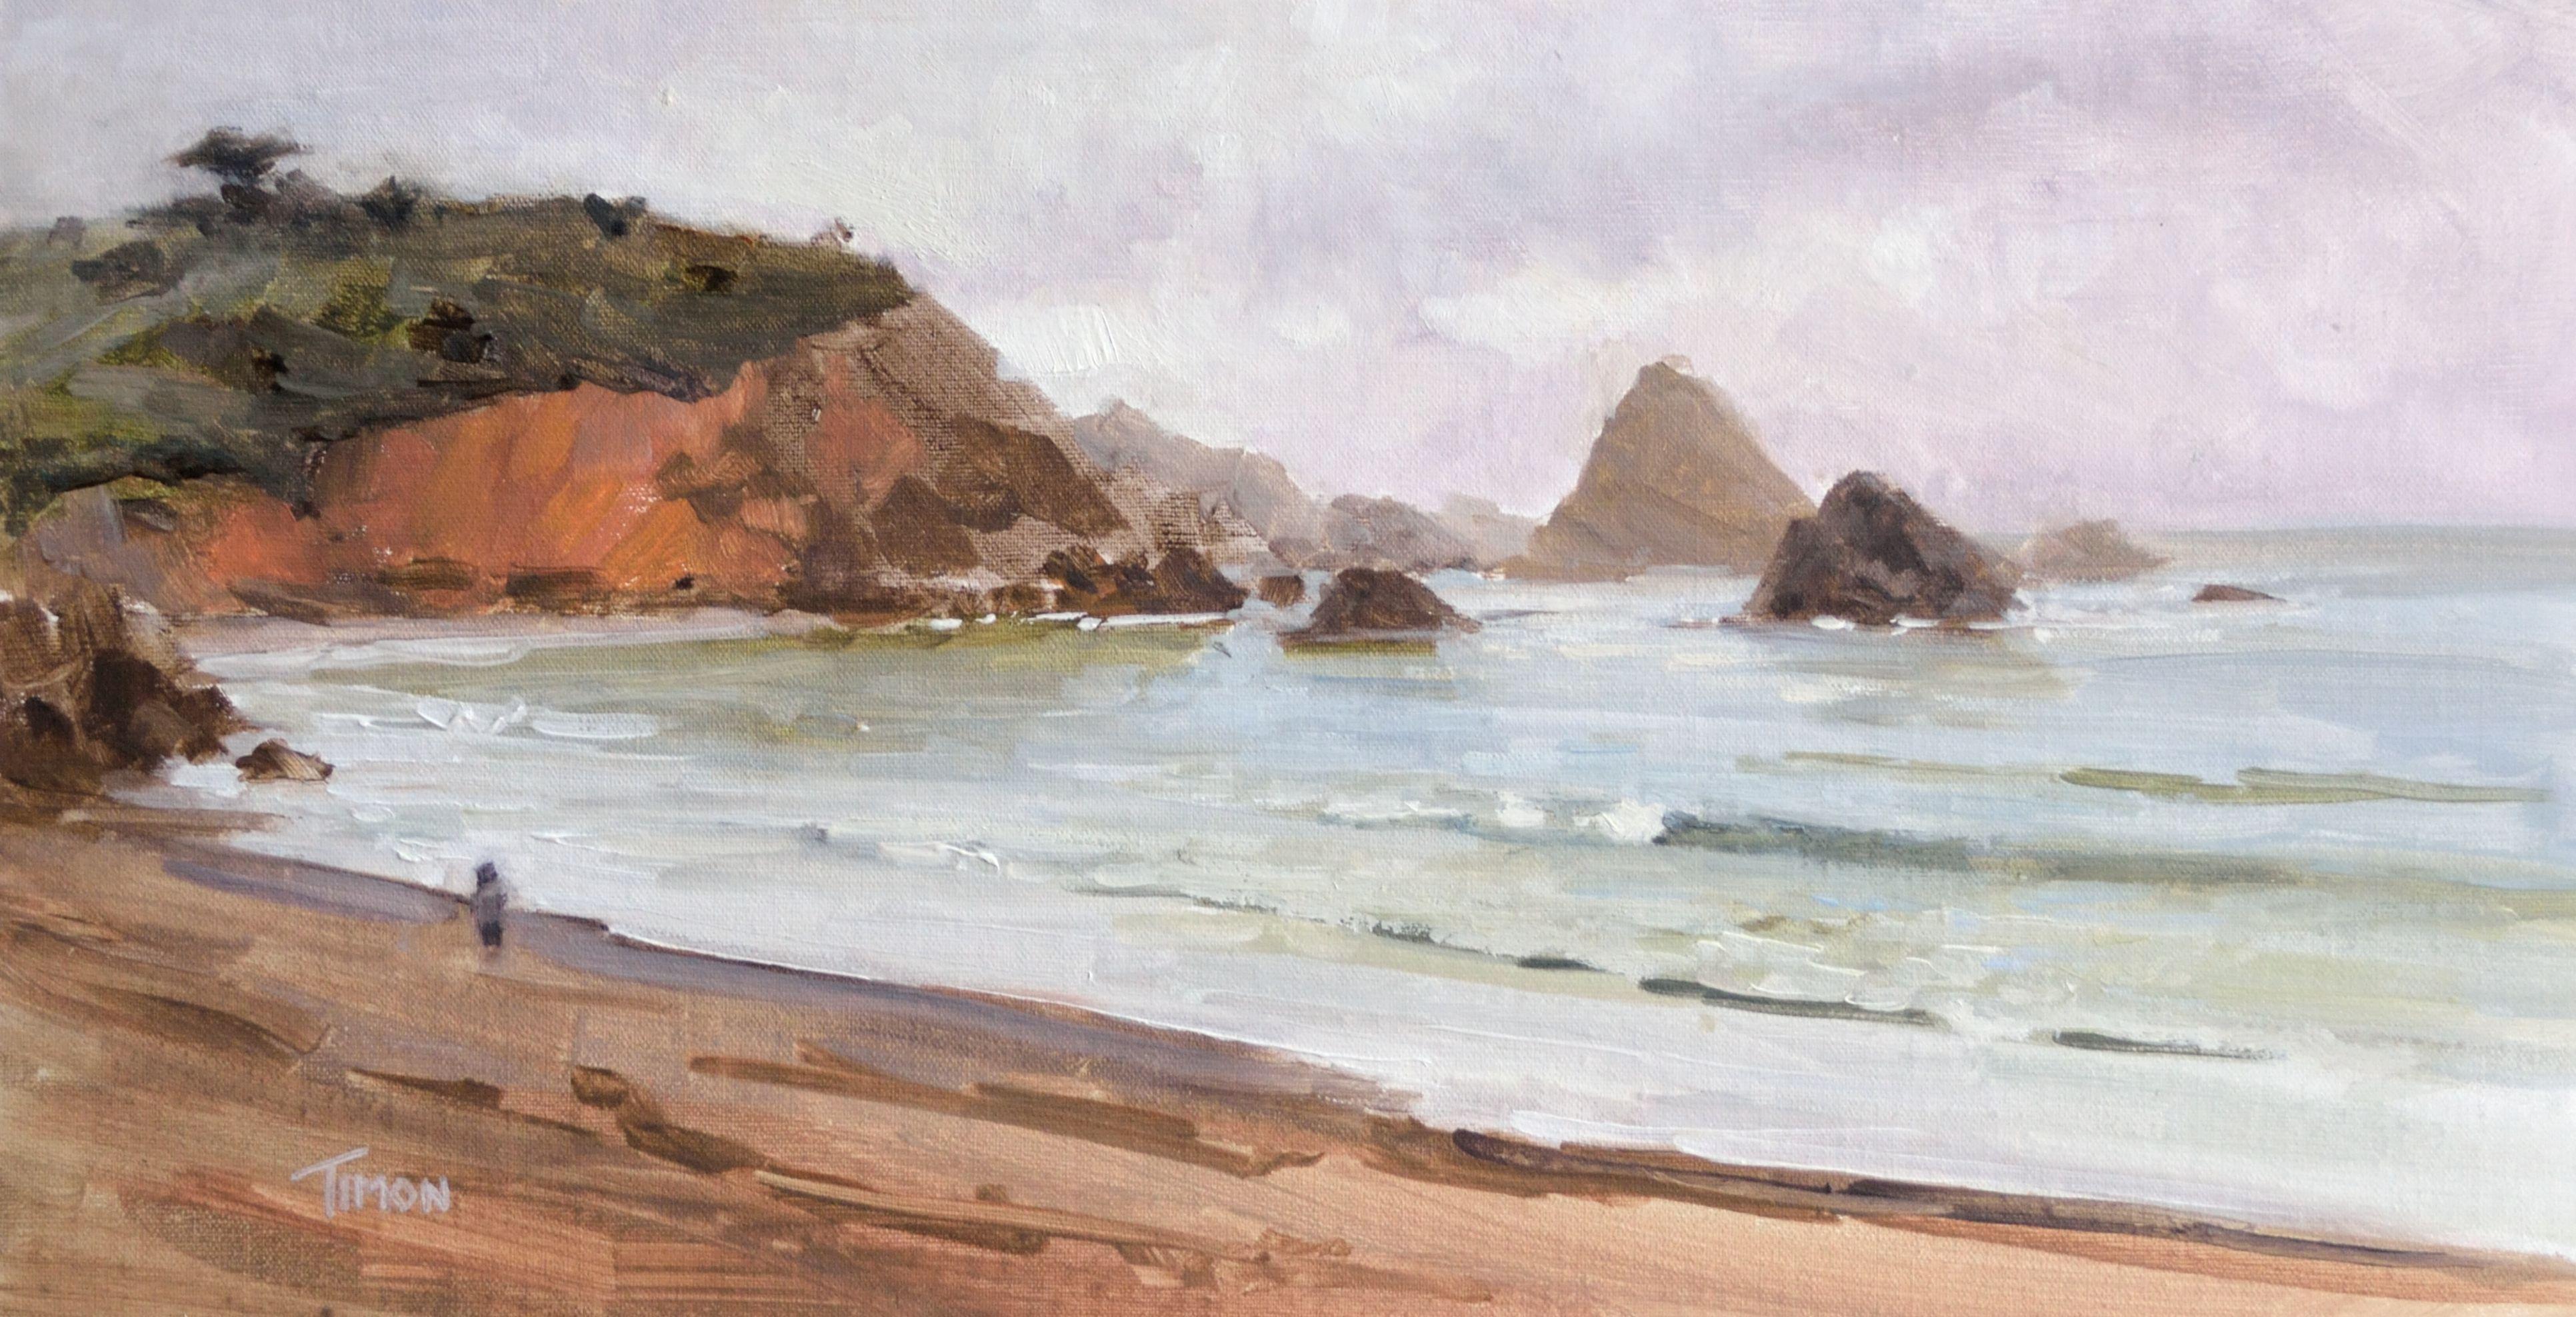 Promenade en bord de mer, peinture, huile sur toile - Painting de Timon Sloane